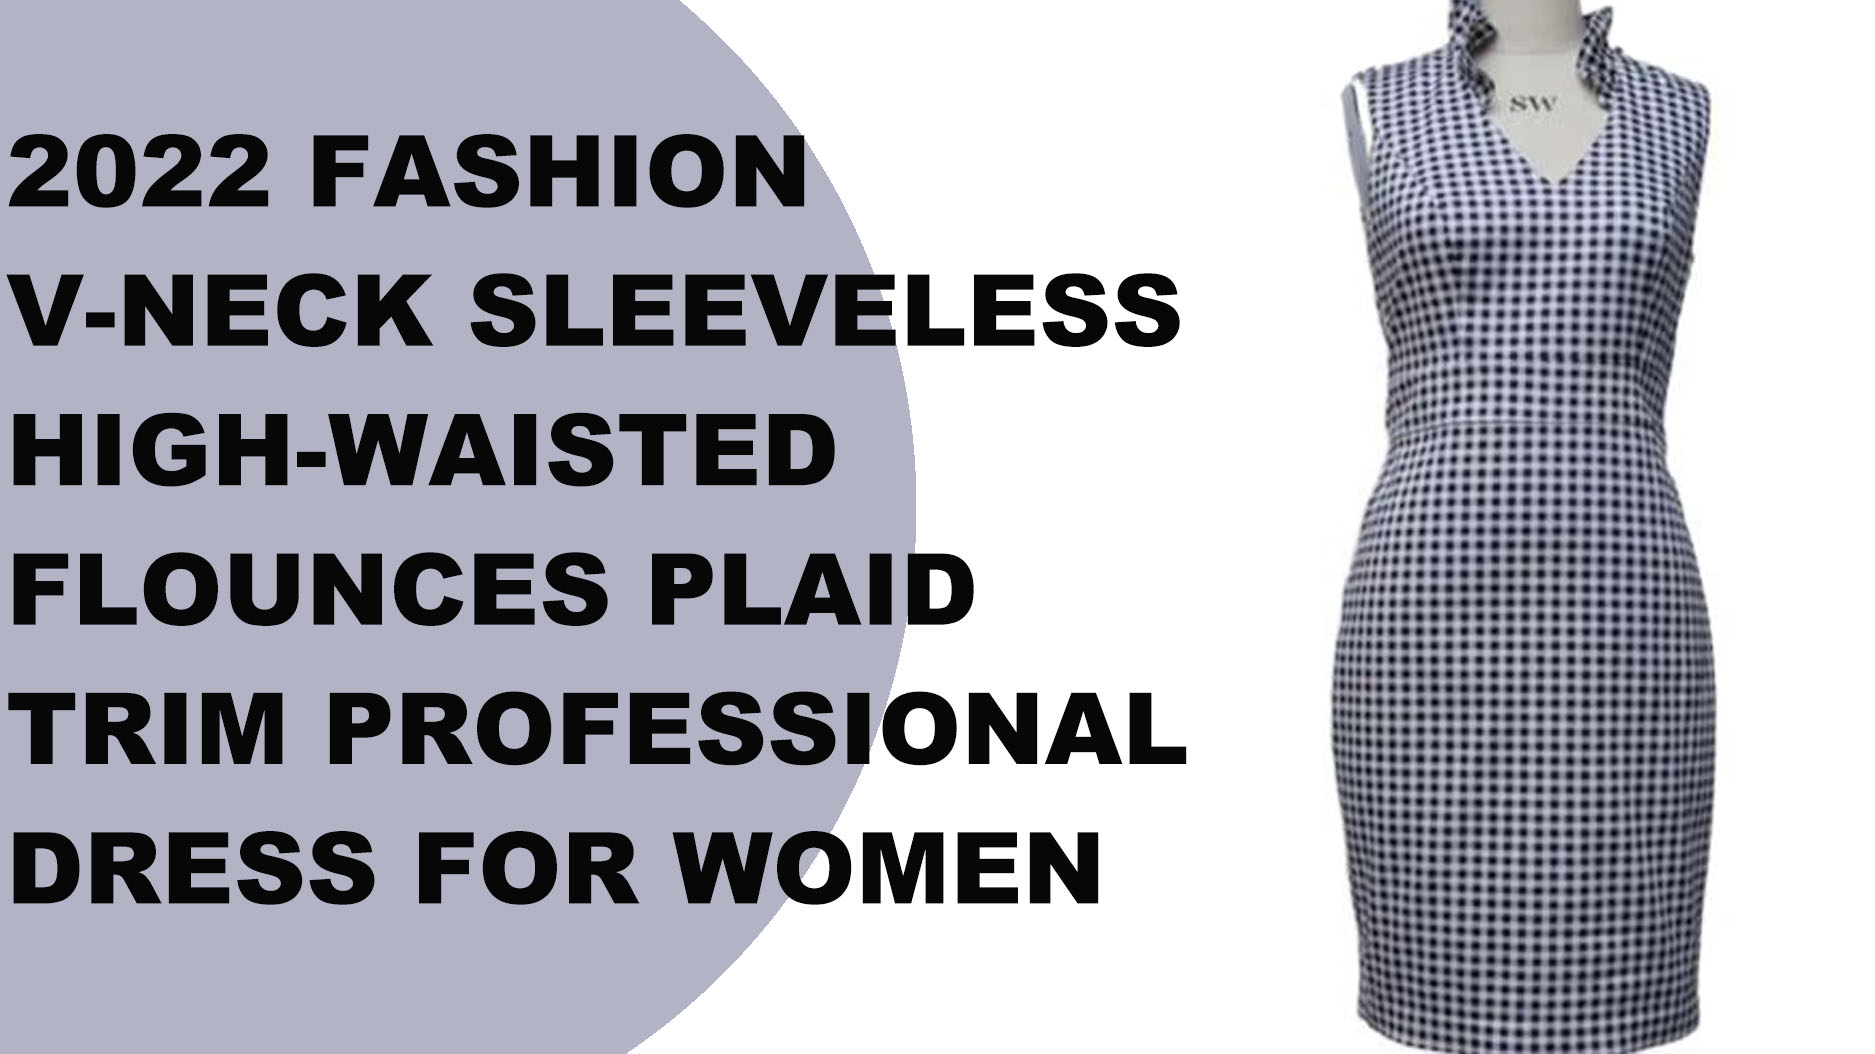 महिलांसाठी 2022 फॅशन व्ही-नेक स्लीव्हलेस हाय-कंबर असलेला फ्लॉन्स प्लेड ट्रिम व्यावसायिक ड्रेस